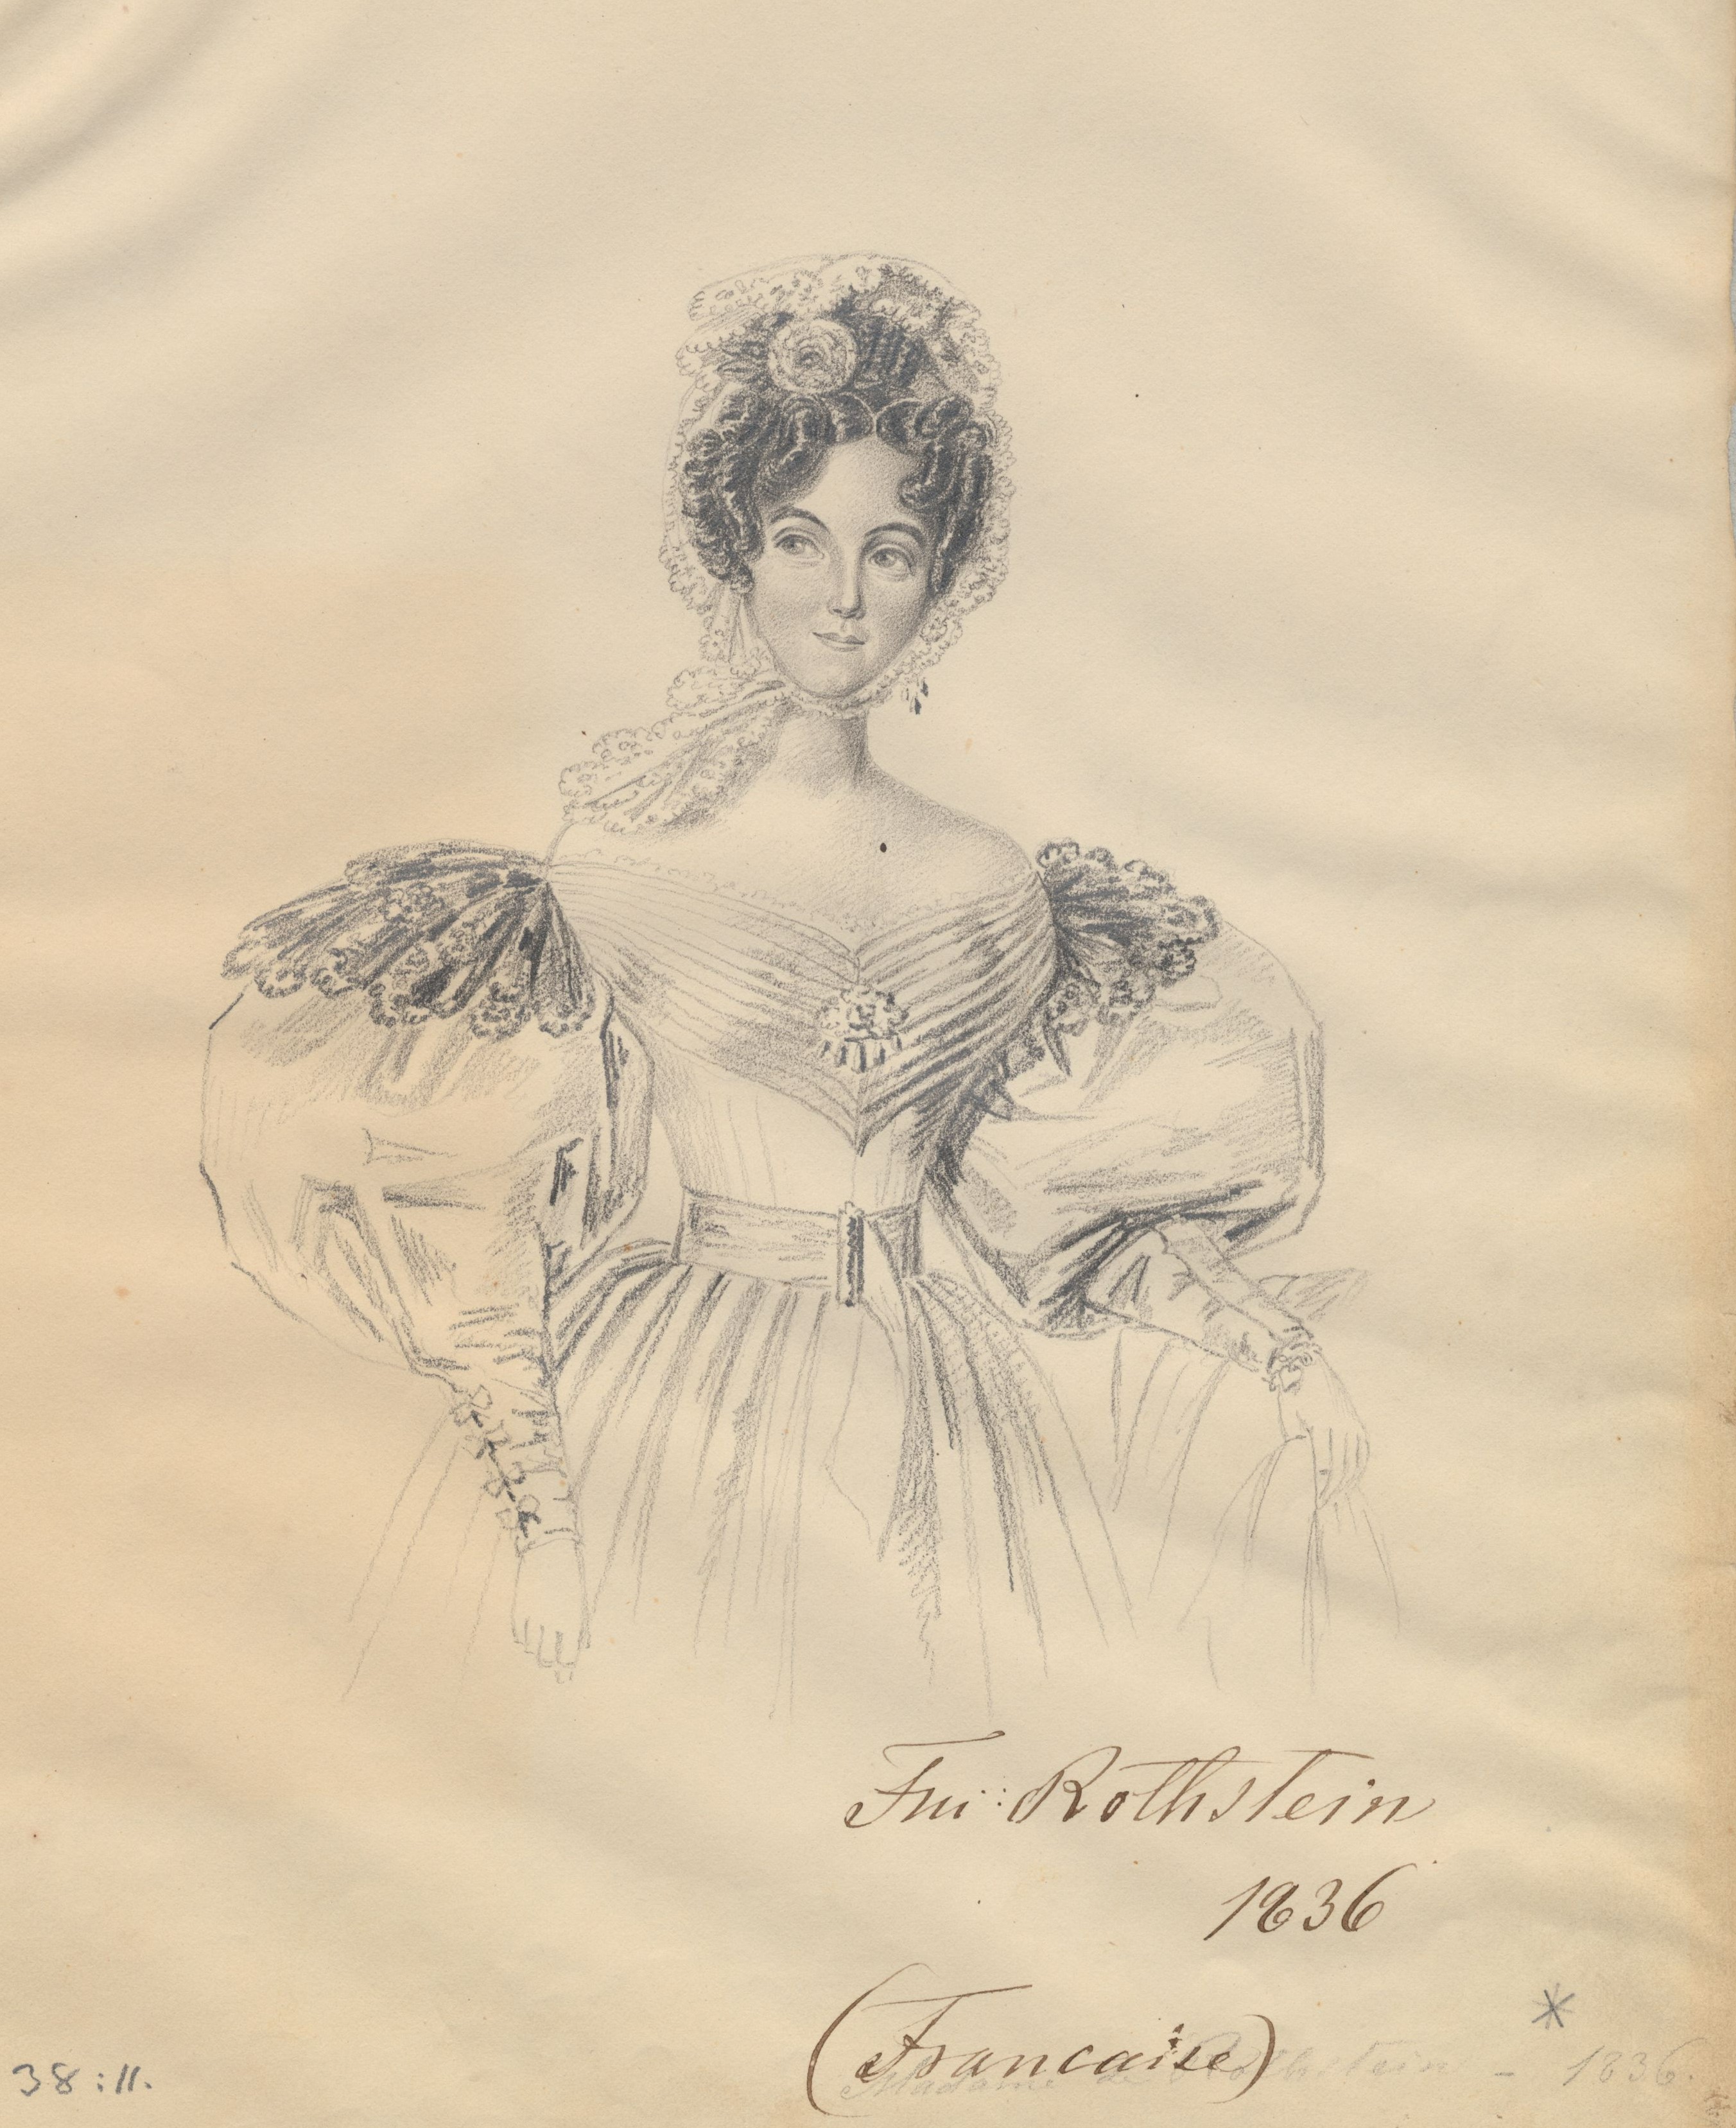 Blyertsteckning av en vacker ung kvinna iförd en praktfull klänning med stora puffärmar och en huvudbonad i spets ovanpå en frisyr med korkrusvlockar.